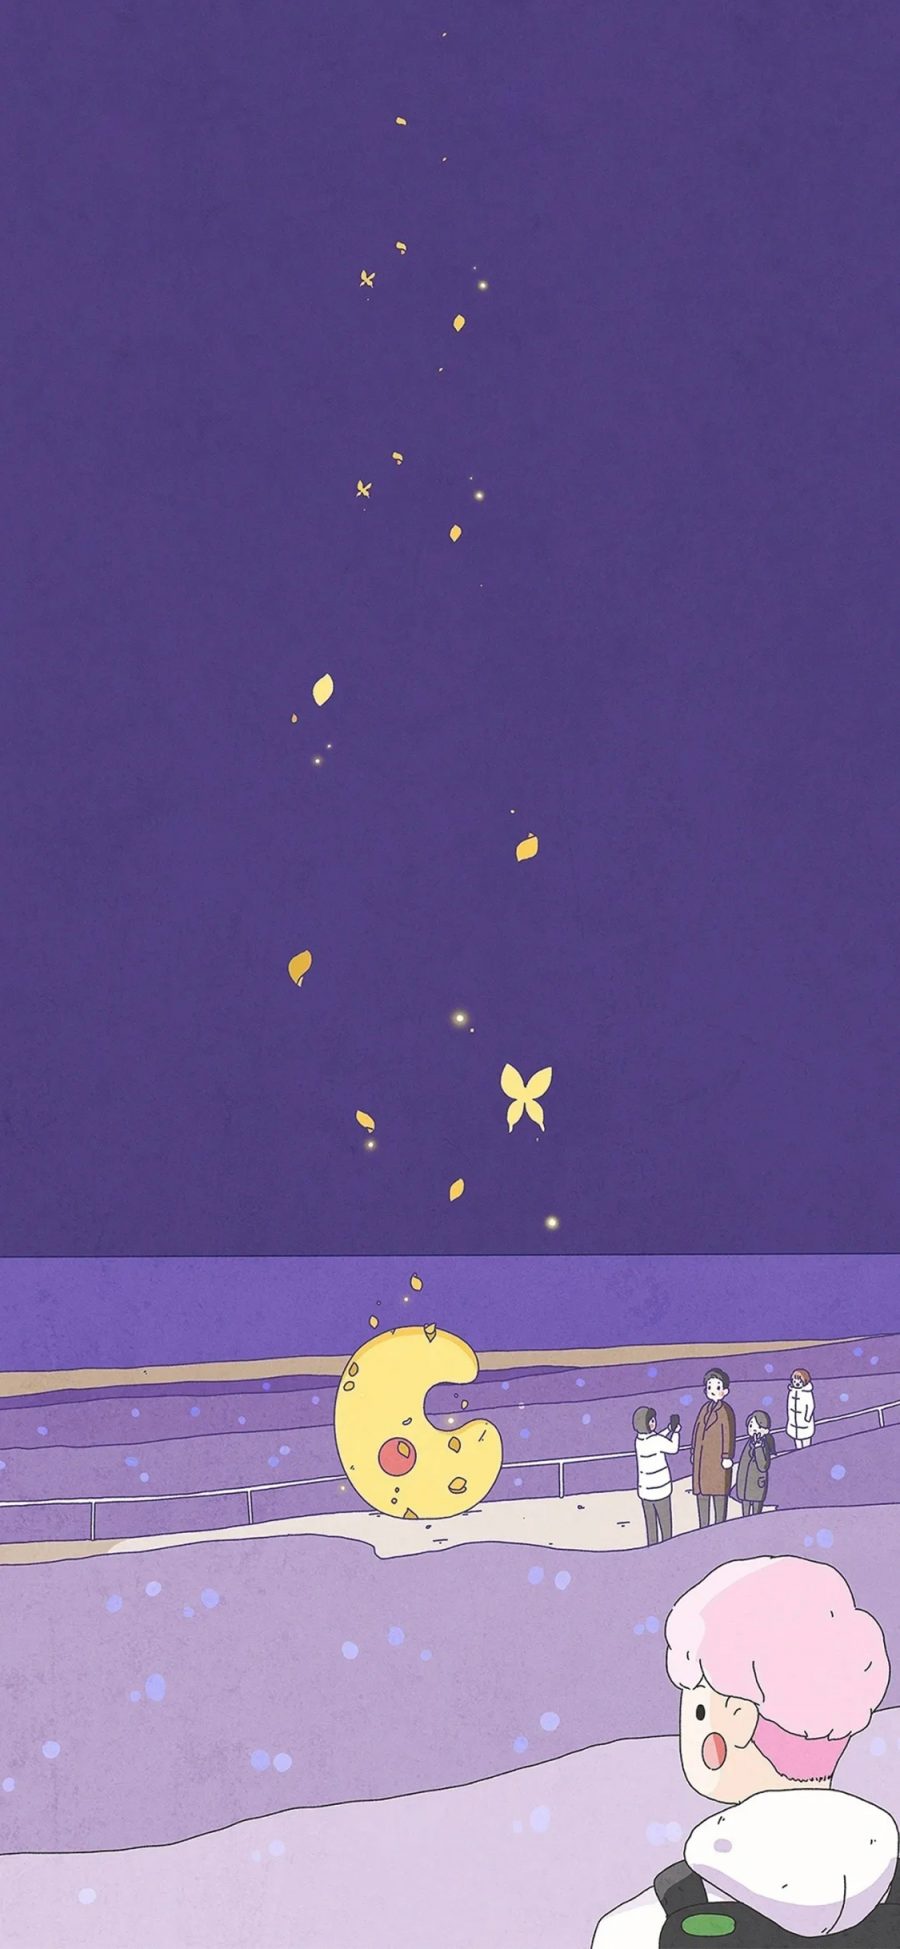 [2436×1125]插图 紫色 梦幻 拍照 蝴蝶 苹果手机动漫壁纸图片